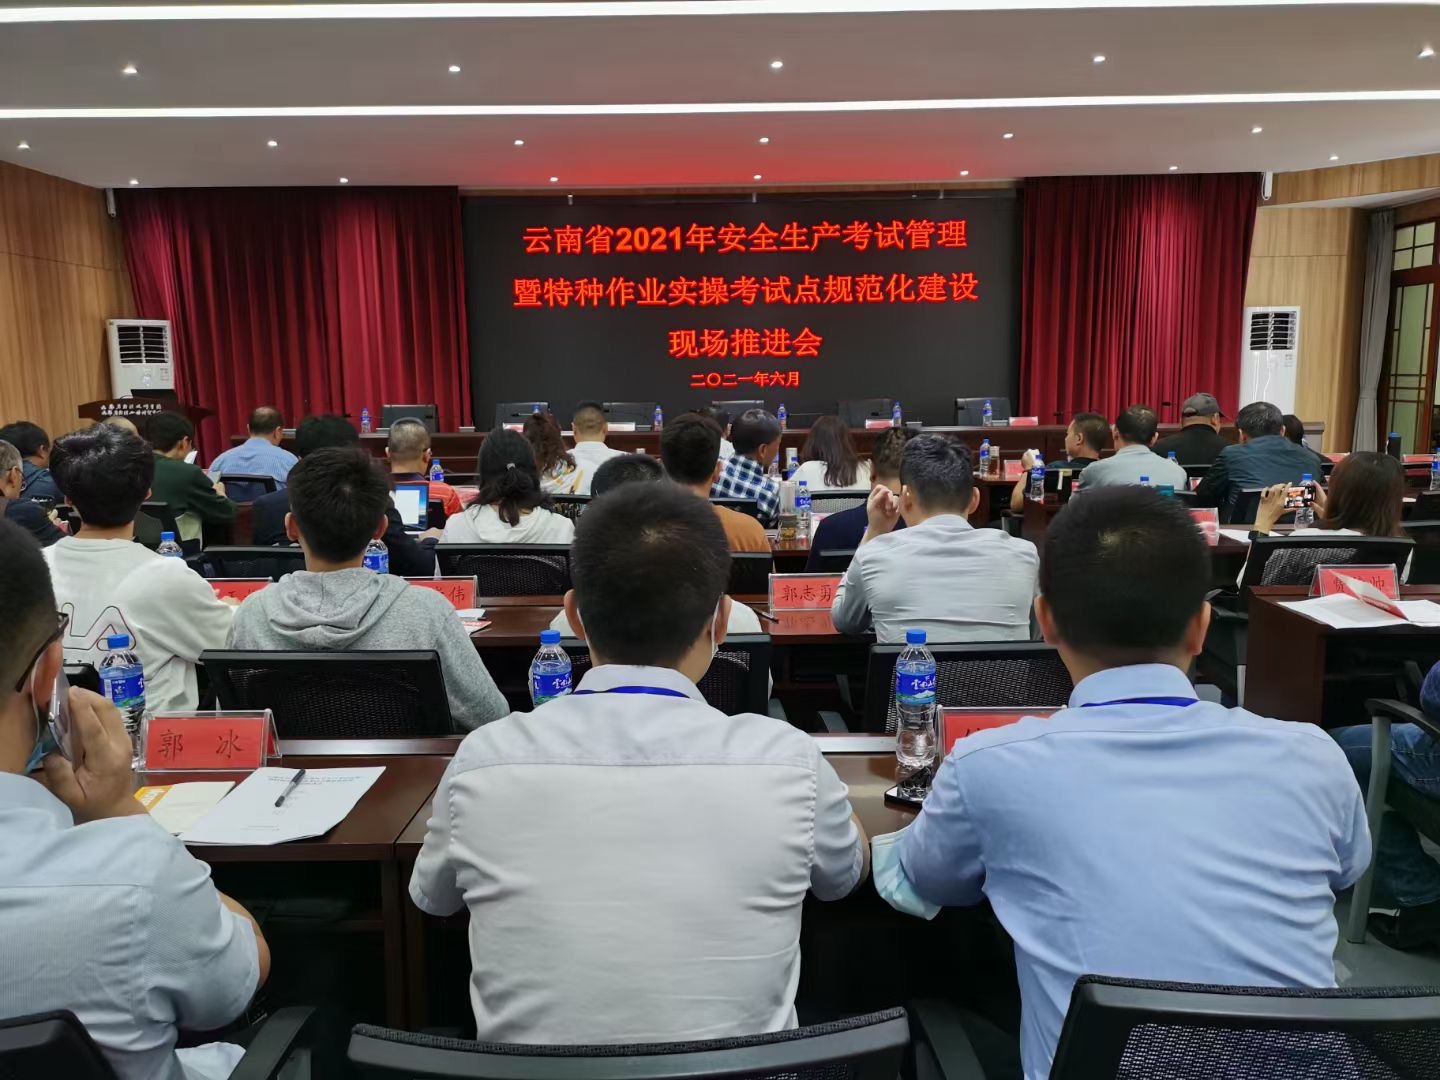 云南省2021年安全生产考试管理暨特种作业实操考试点规范化建设推进会